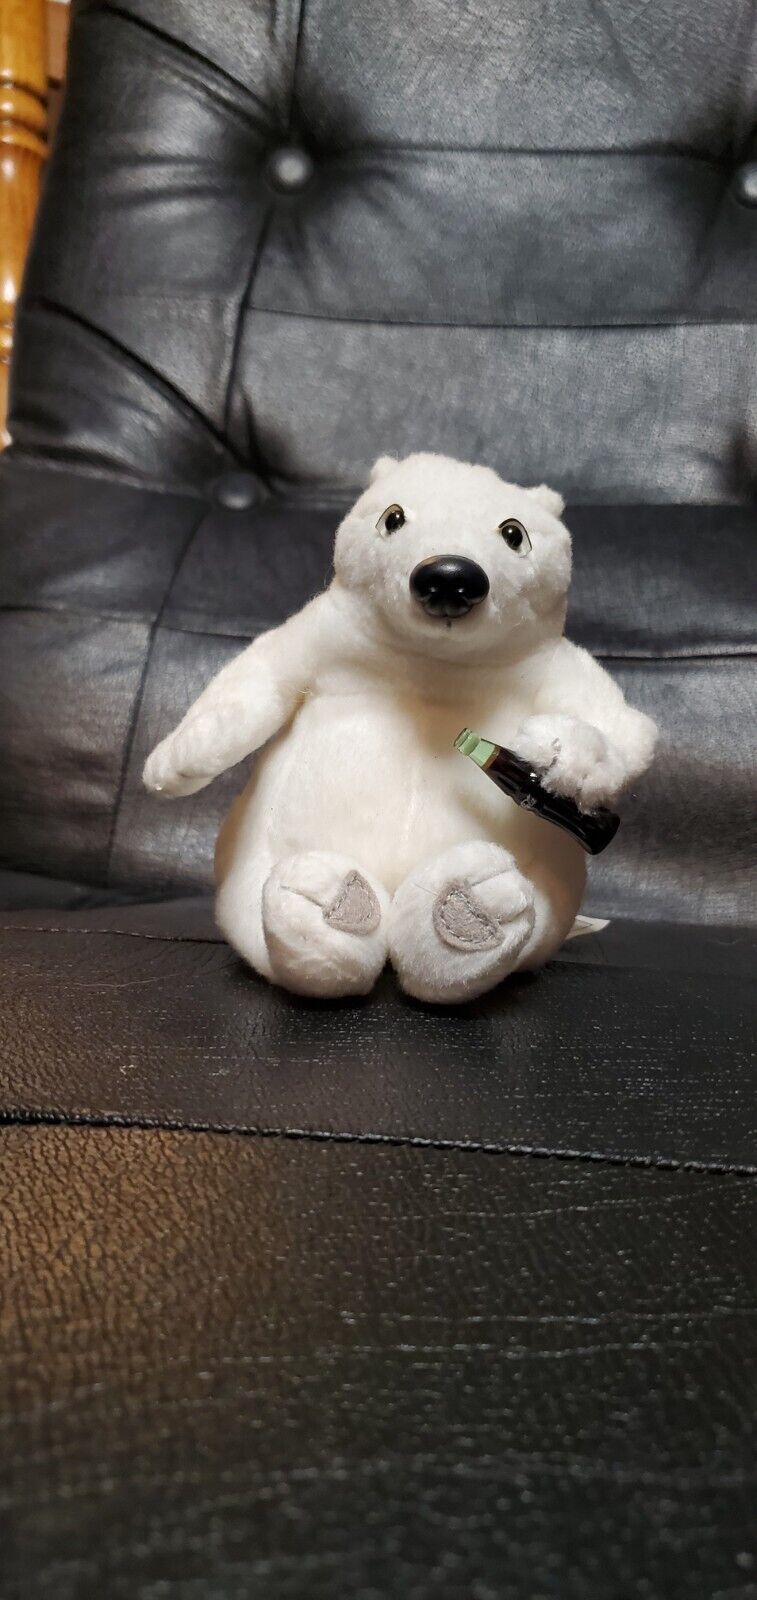  Coca Cola Polar Bear Plush Collection Drinking Soda Bottle 6”